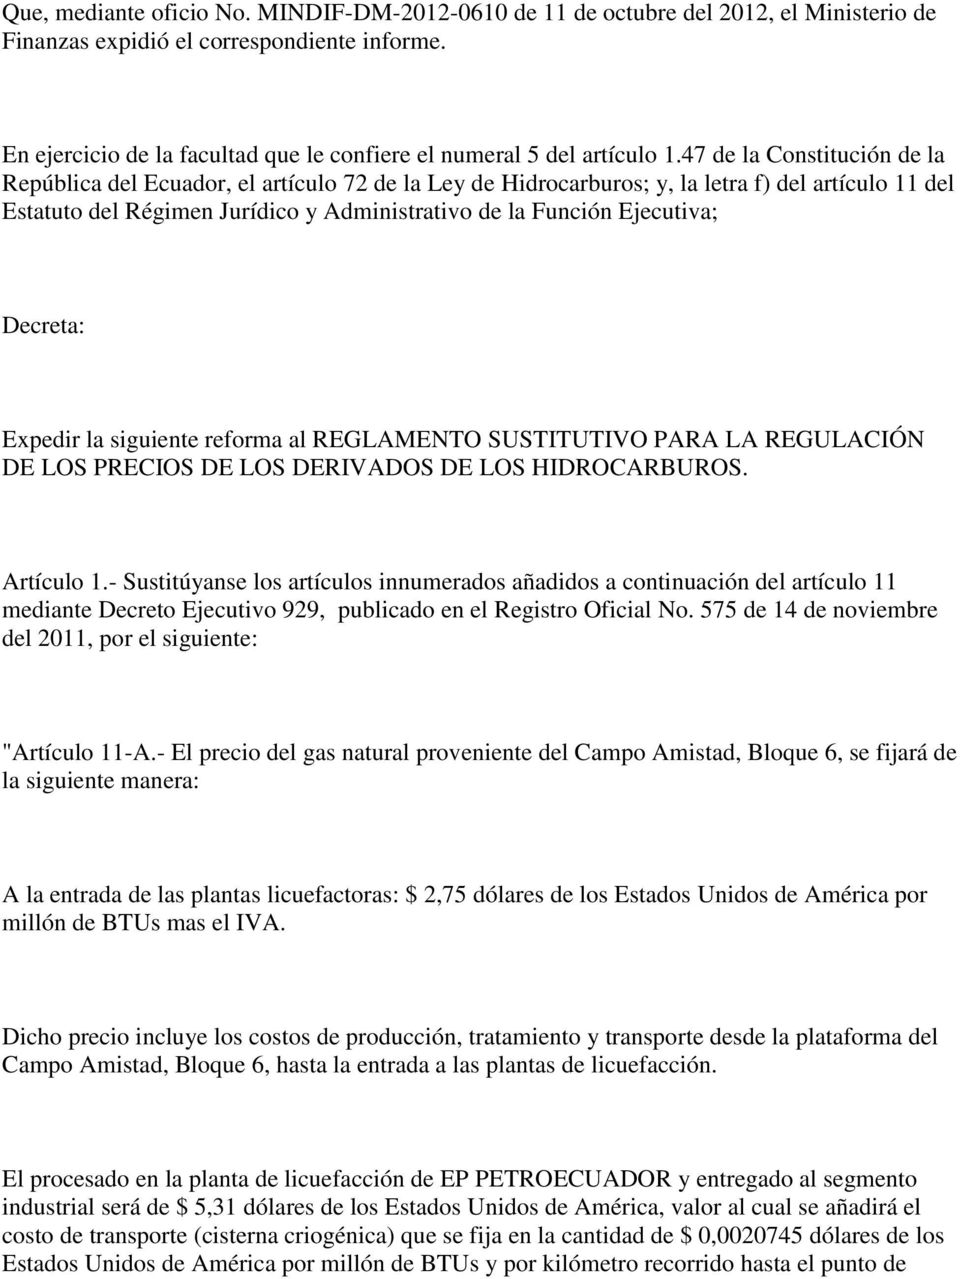 47 de la Constitución de la República del Ecuador, el artículo 72 de la Ley de Hidrocarburos; y, la letra f) del artículo 11 del Estatuto del Régimen Jurídico y Administrativo de la Función